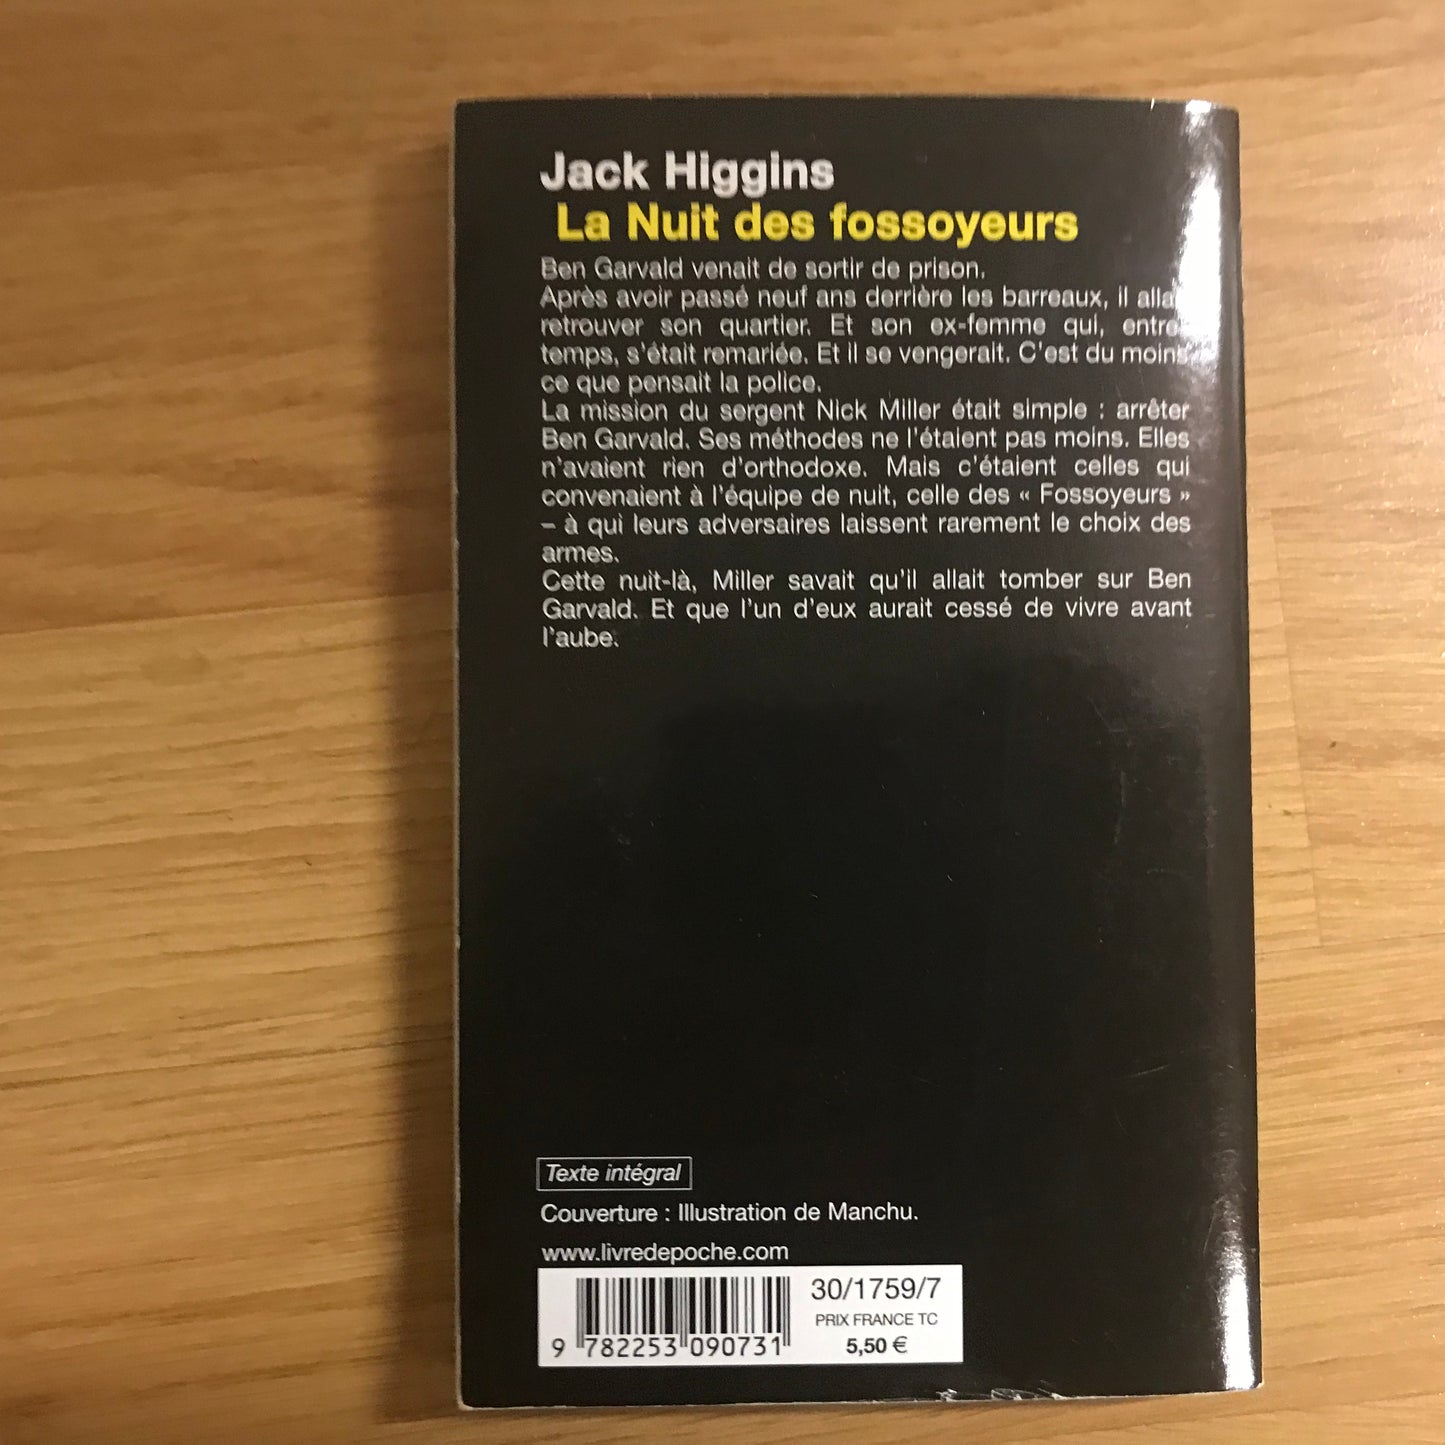 Higgins, Jack - La nuit des fossoyeurs